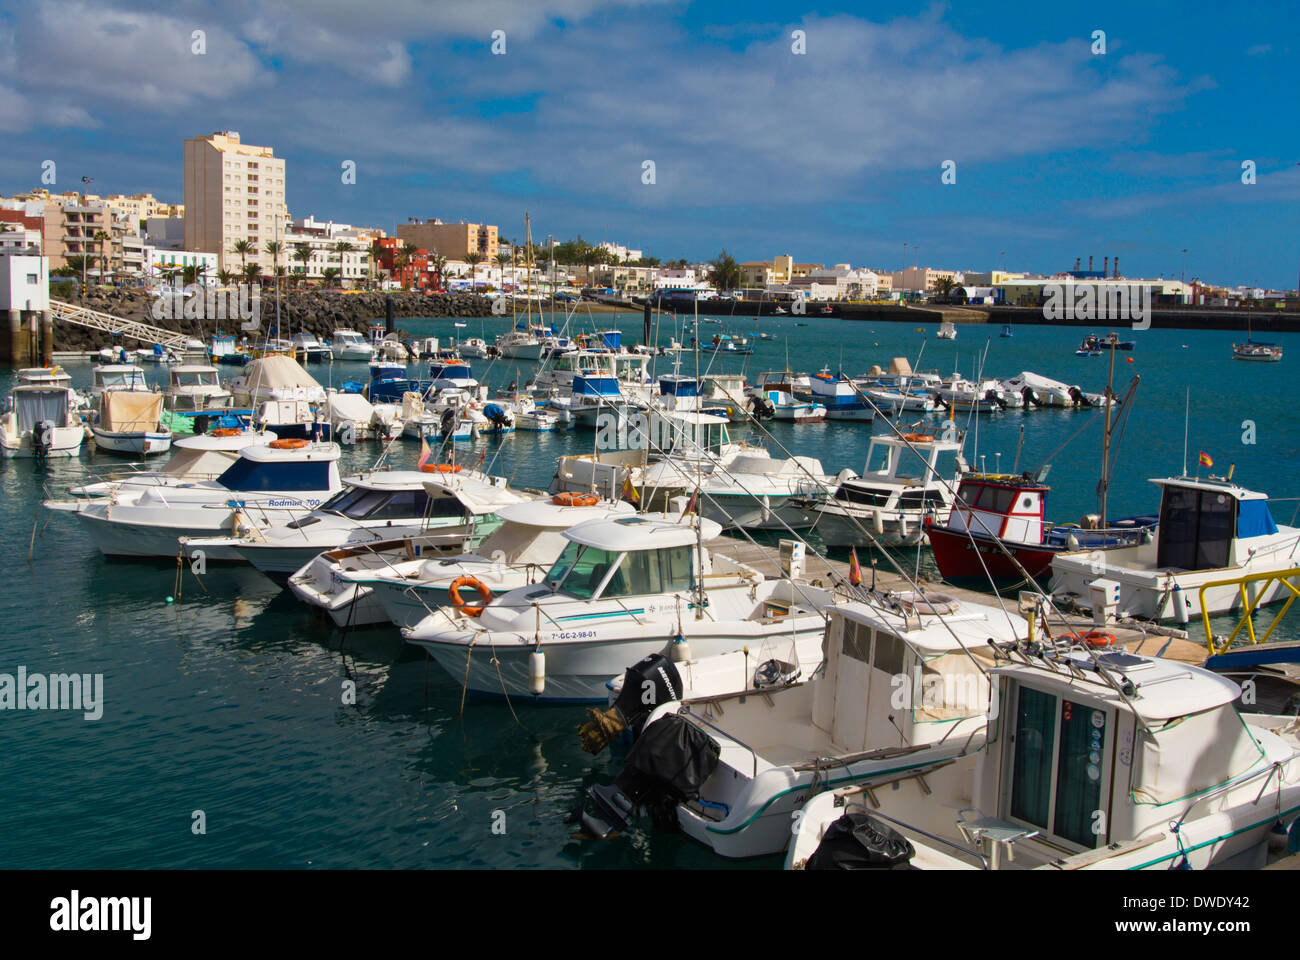 Port pour les yachts et autres bateaux privés, Puerto del Rosaro, Fuerteventura, Îles Canaries, Espagne, Europe Banque D'Images